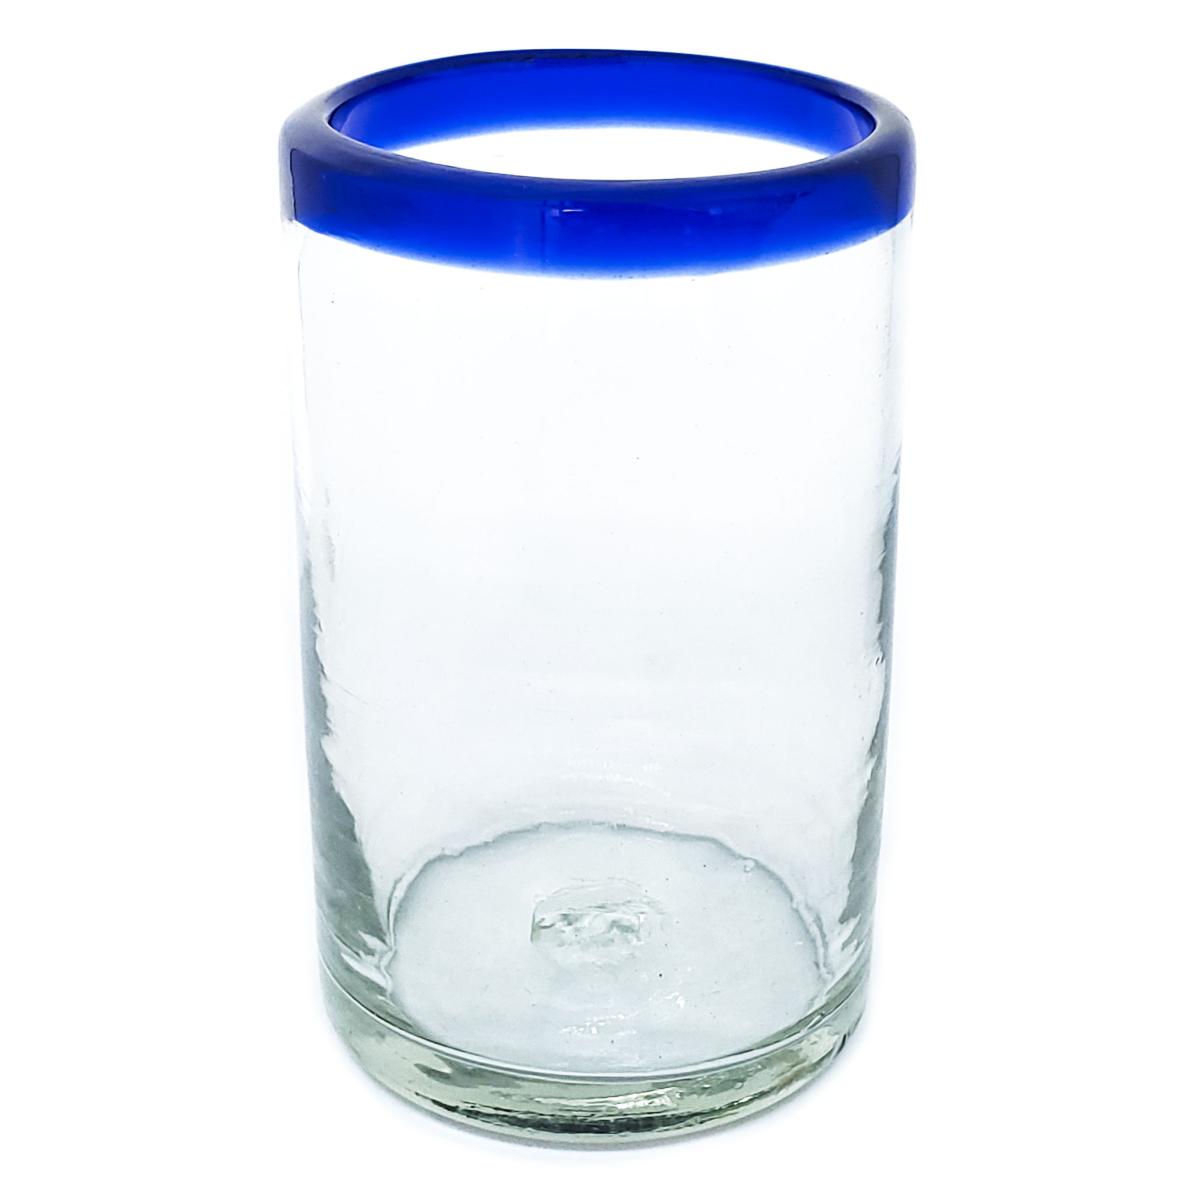 Borde de Color al Mayoreo / vasos grandes con borde azul cobalto, 14 oz, Vidrio Reciclado, Libre de Plomo y Toxinas / stos artesanales vasos le darn un toque clsico a su bebida favorita.